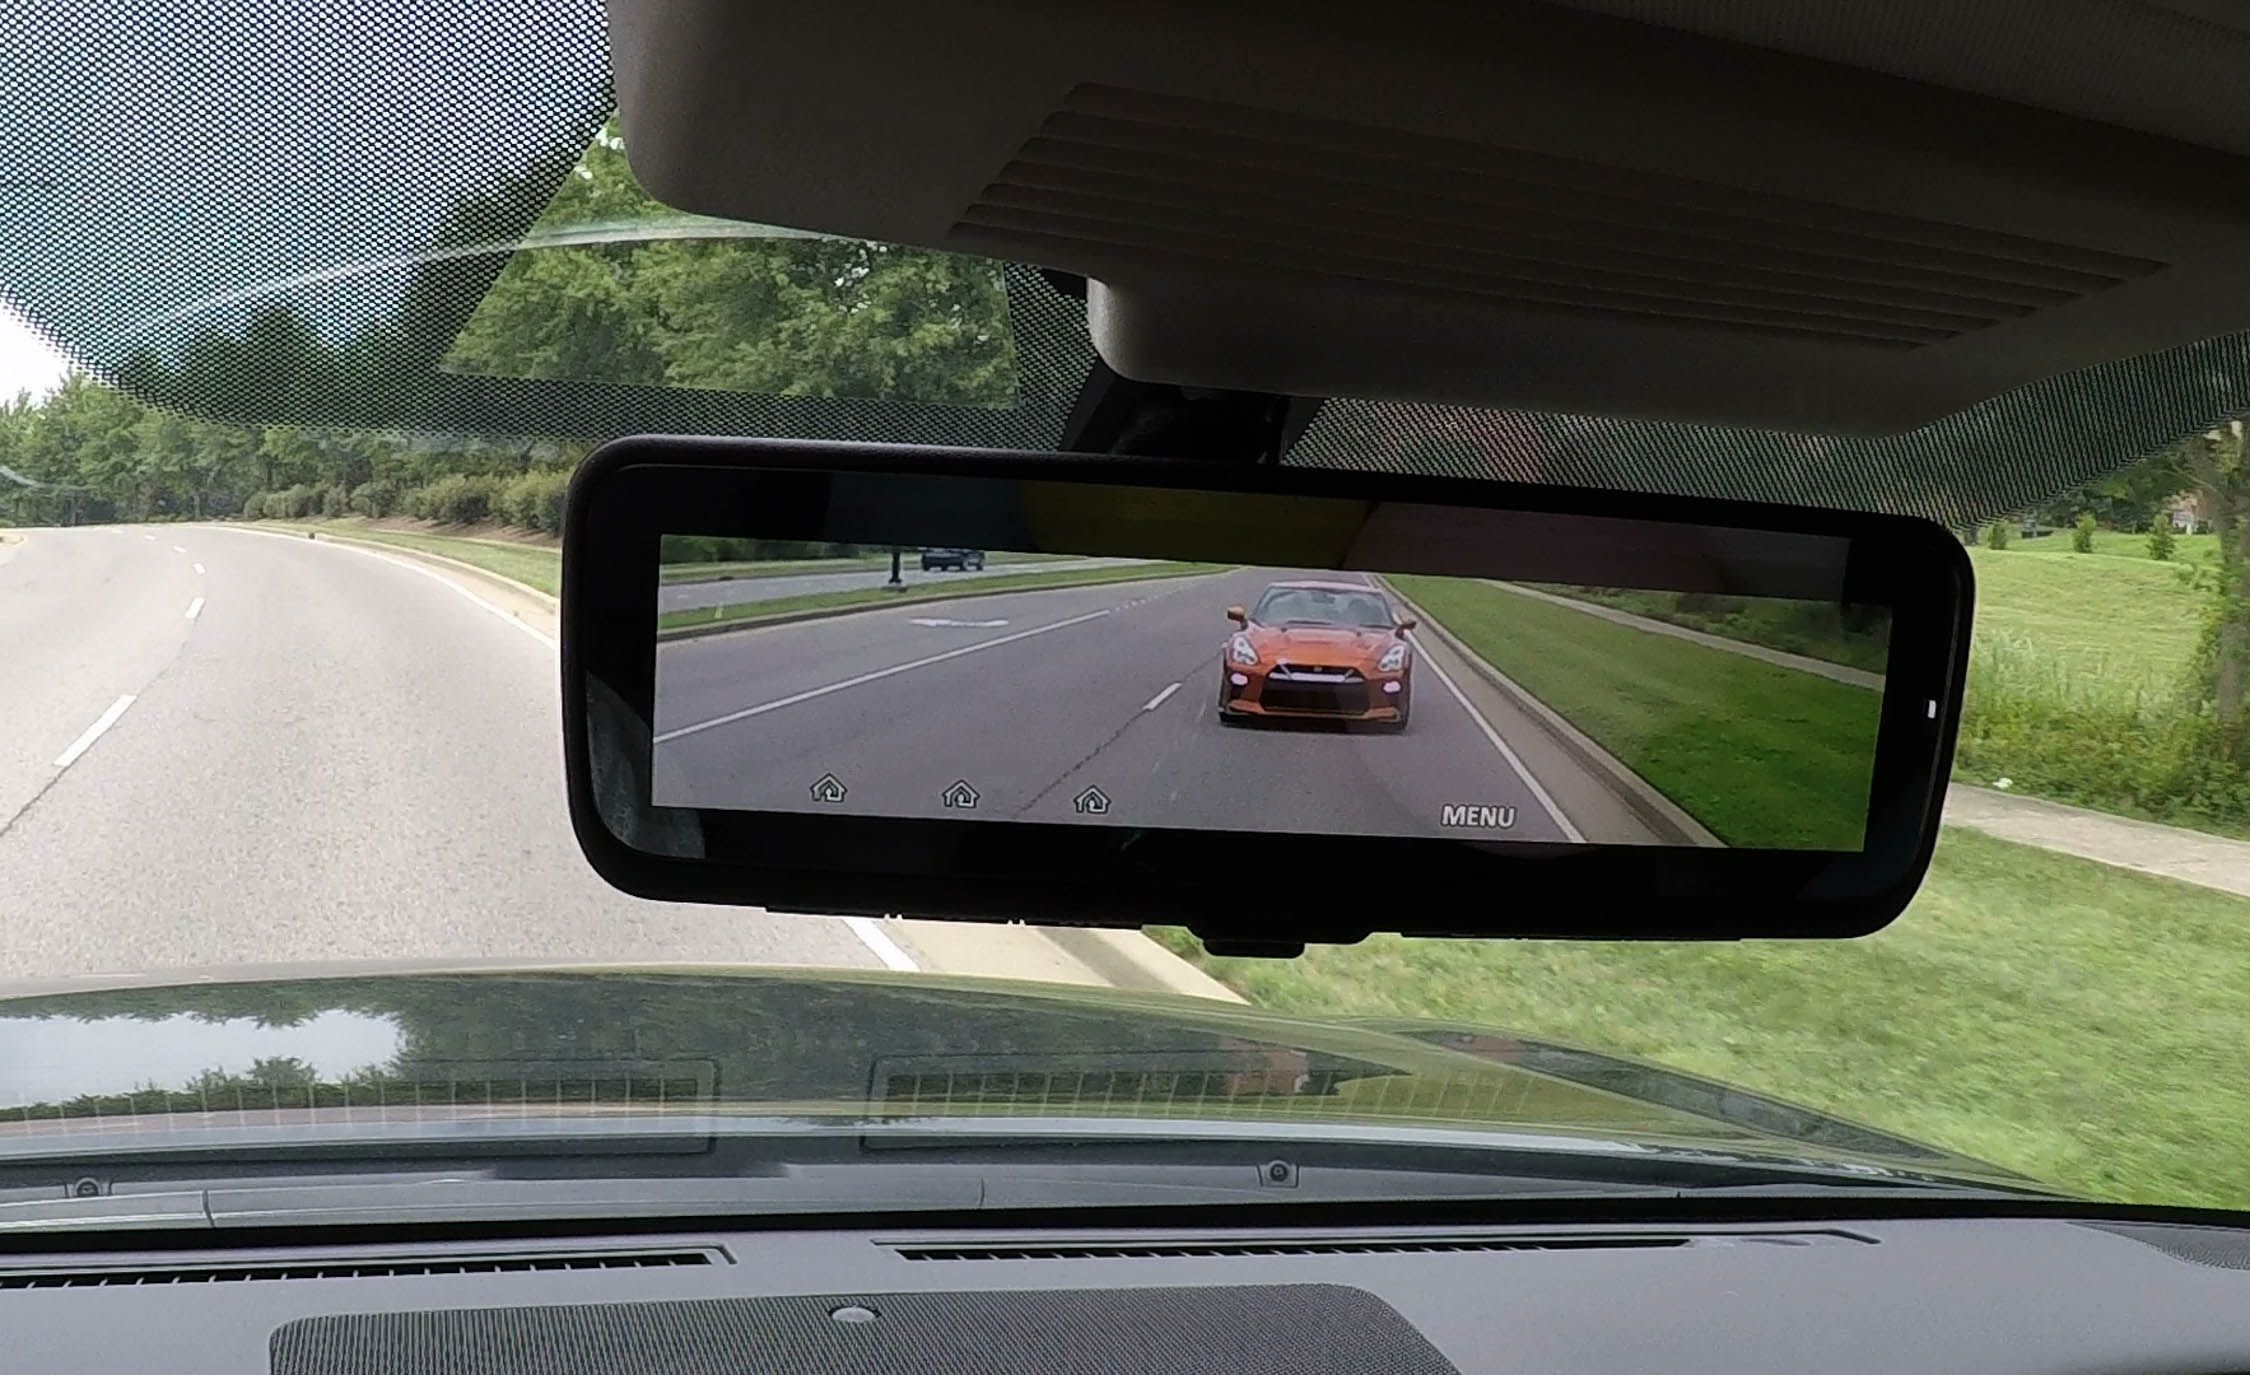 Водитель смотрит в зеркало. Зеркало в машине.